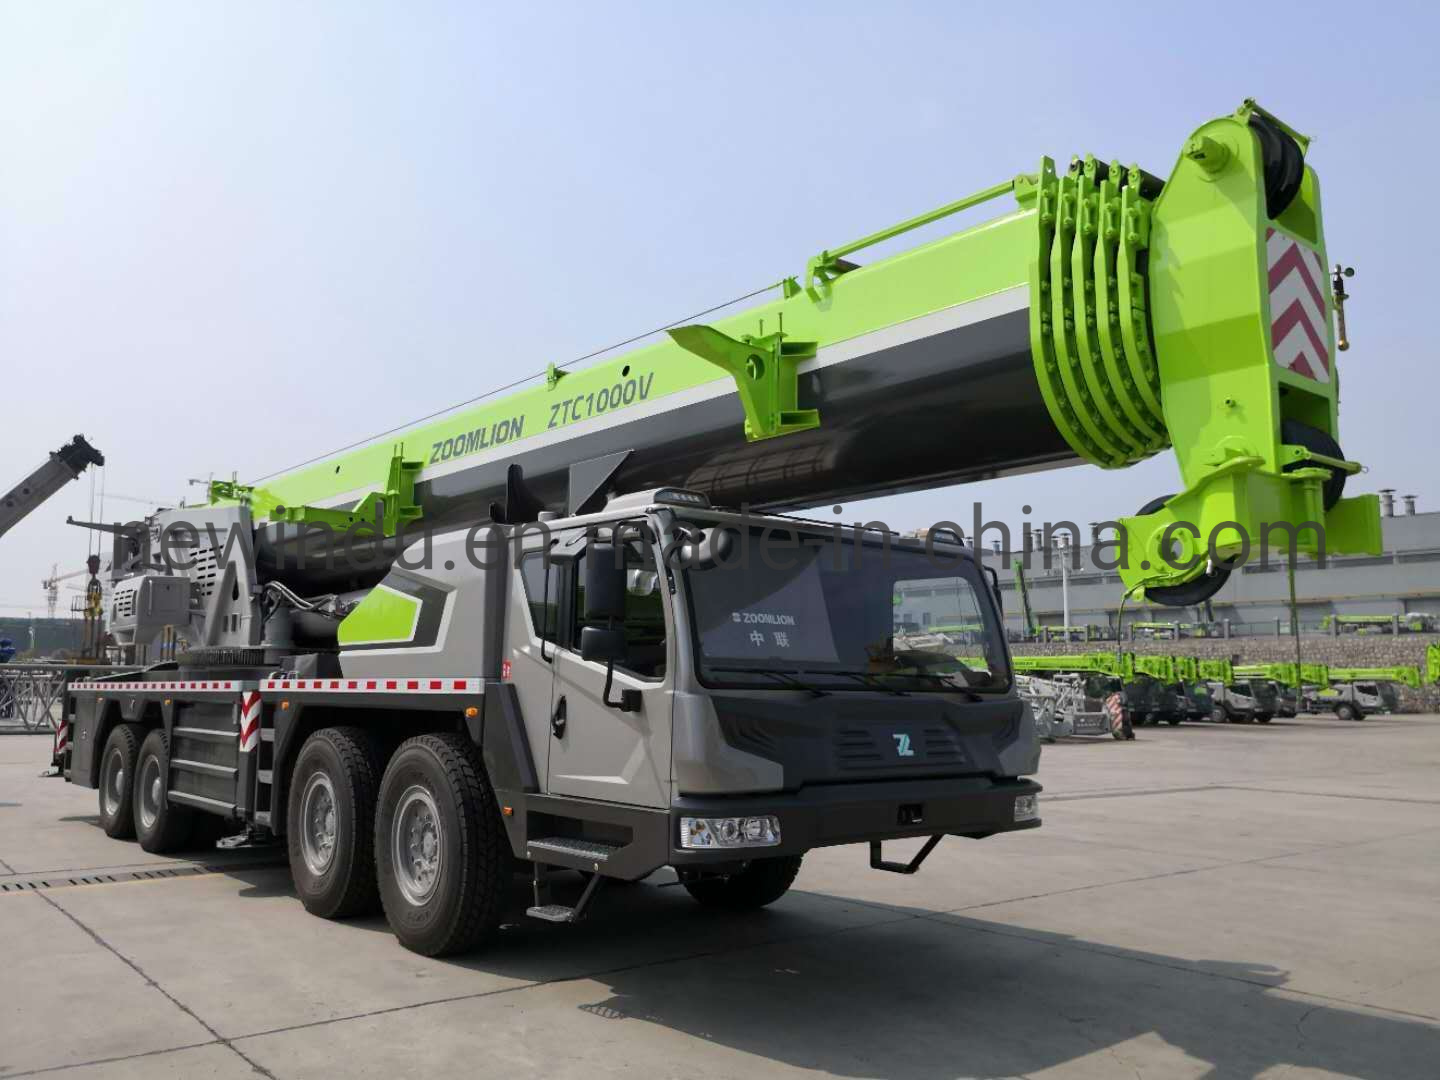 
                100 Tonnen hydraulische Zoomlion China Marke LKW Kran Verkauf in Mongolei
            